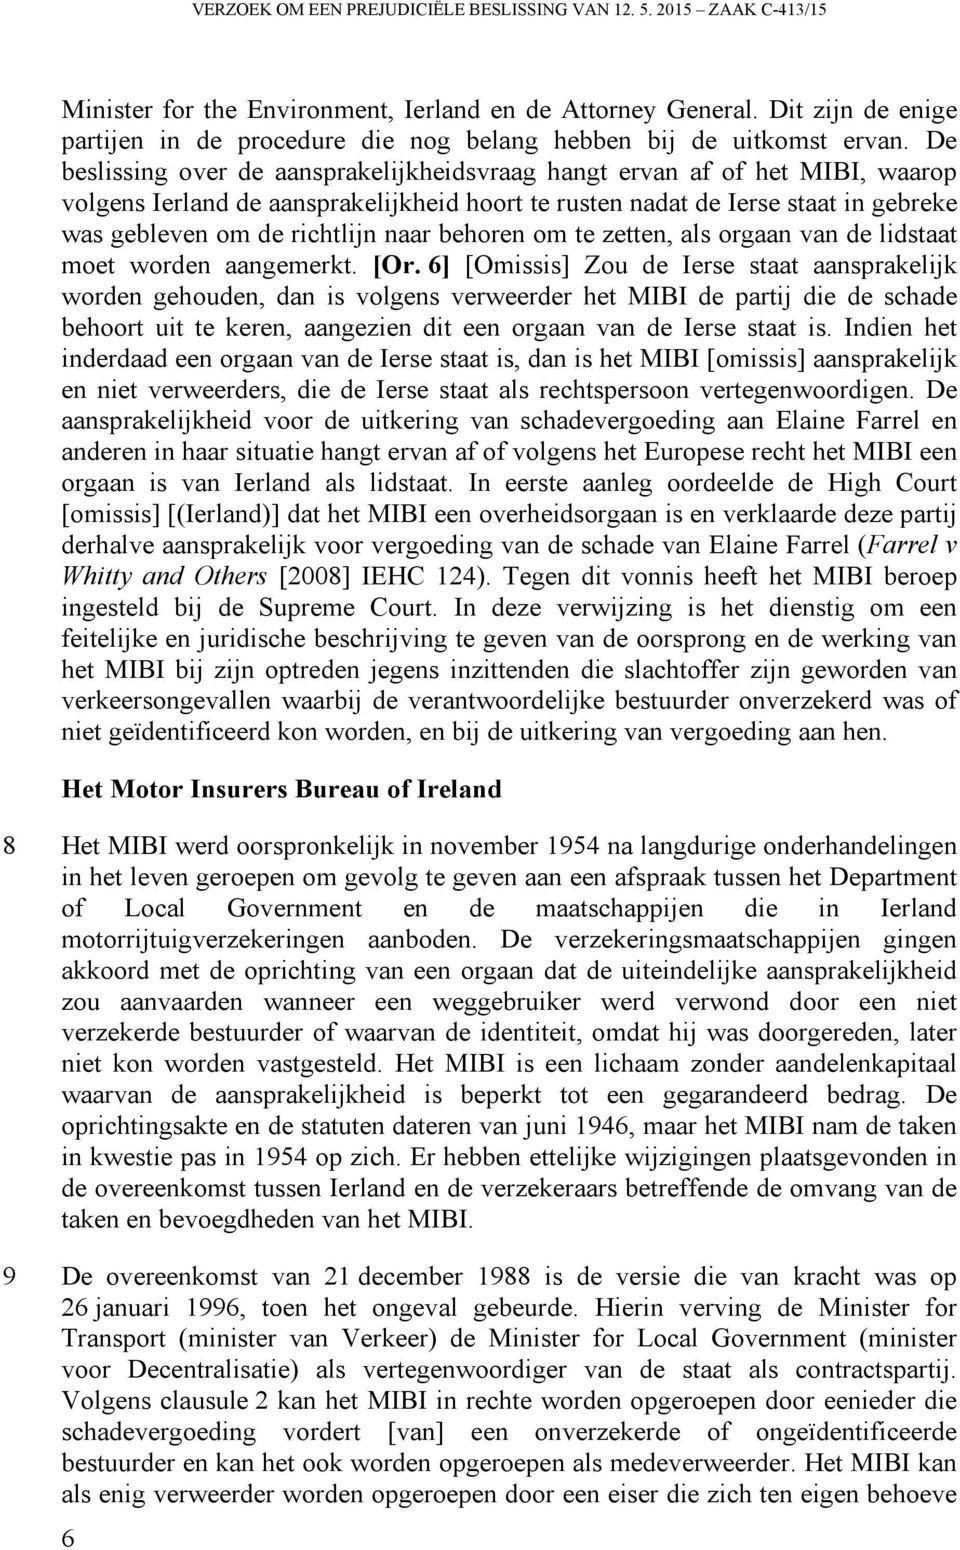 De beslissing over de aansprakelijkheidsvraag hangt ervan af of het MIBI, waarop volgens Ierland de aansprakelijkheid hoort te rusten nadat de Ierse staat in gebreke was gebleven om de richtlijn naar